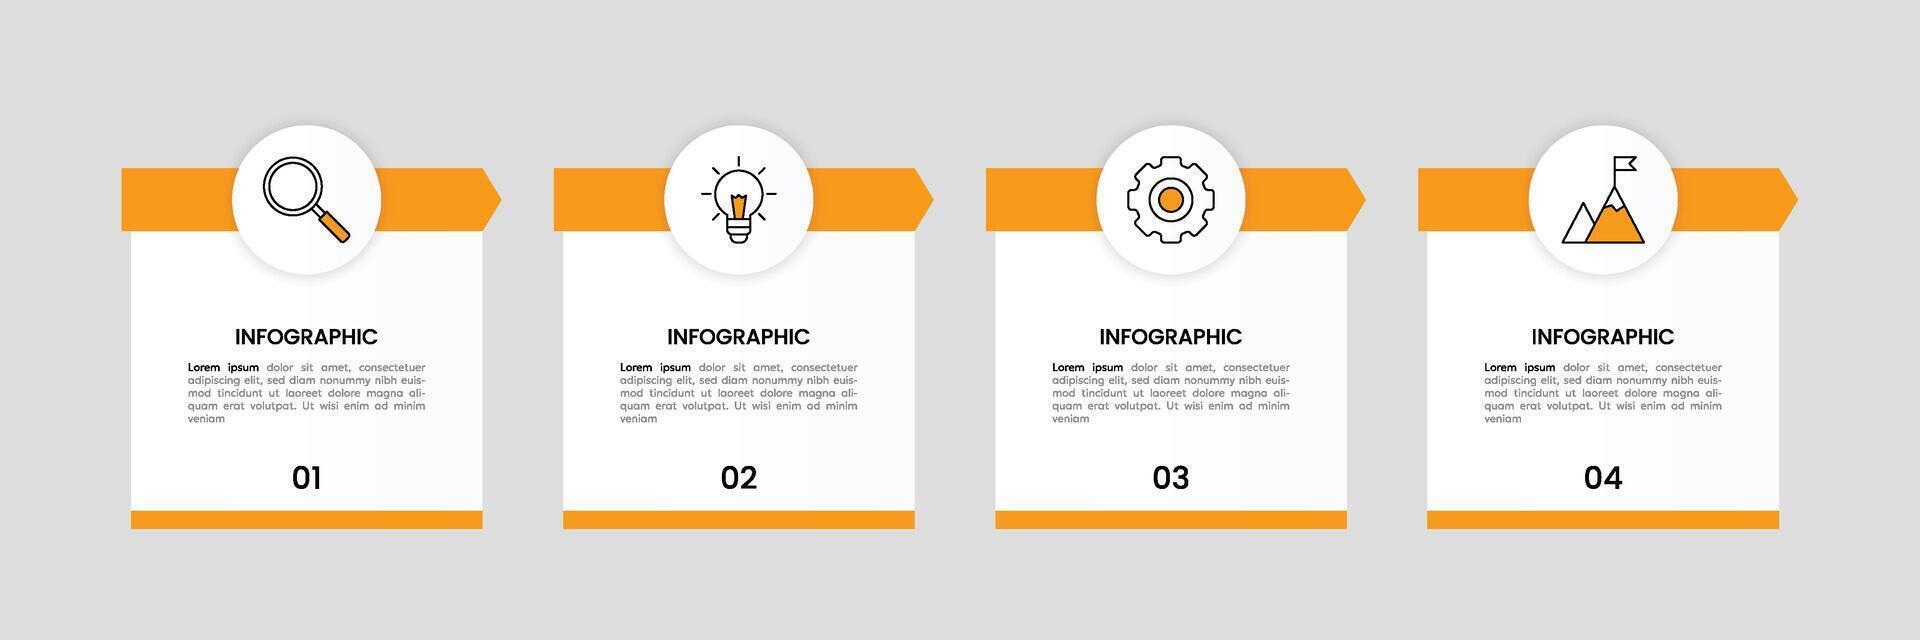 infographic etiket ontwerp sjabloon met pictogrammen en 4 opties of stappen. vector